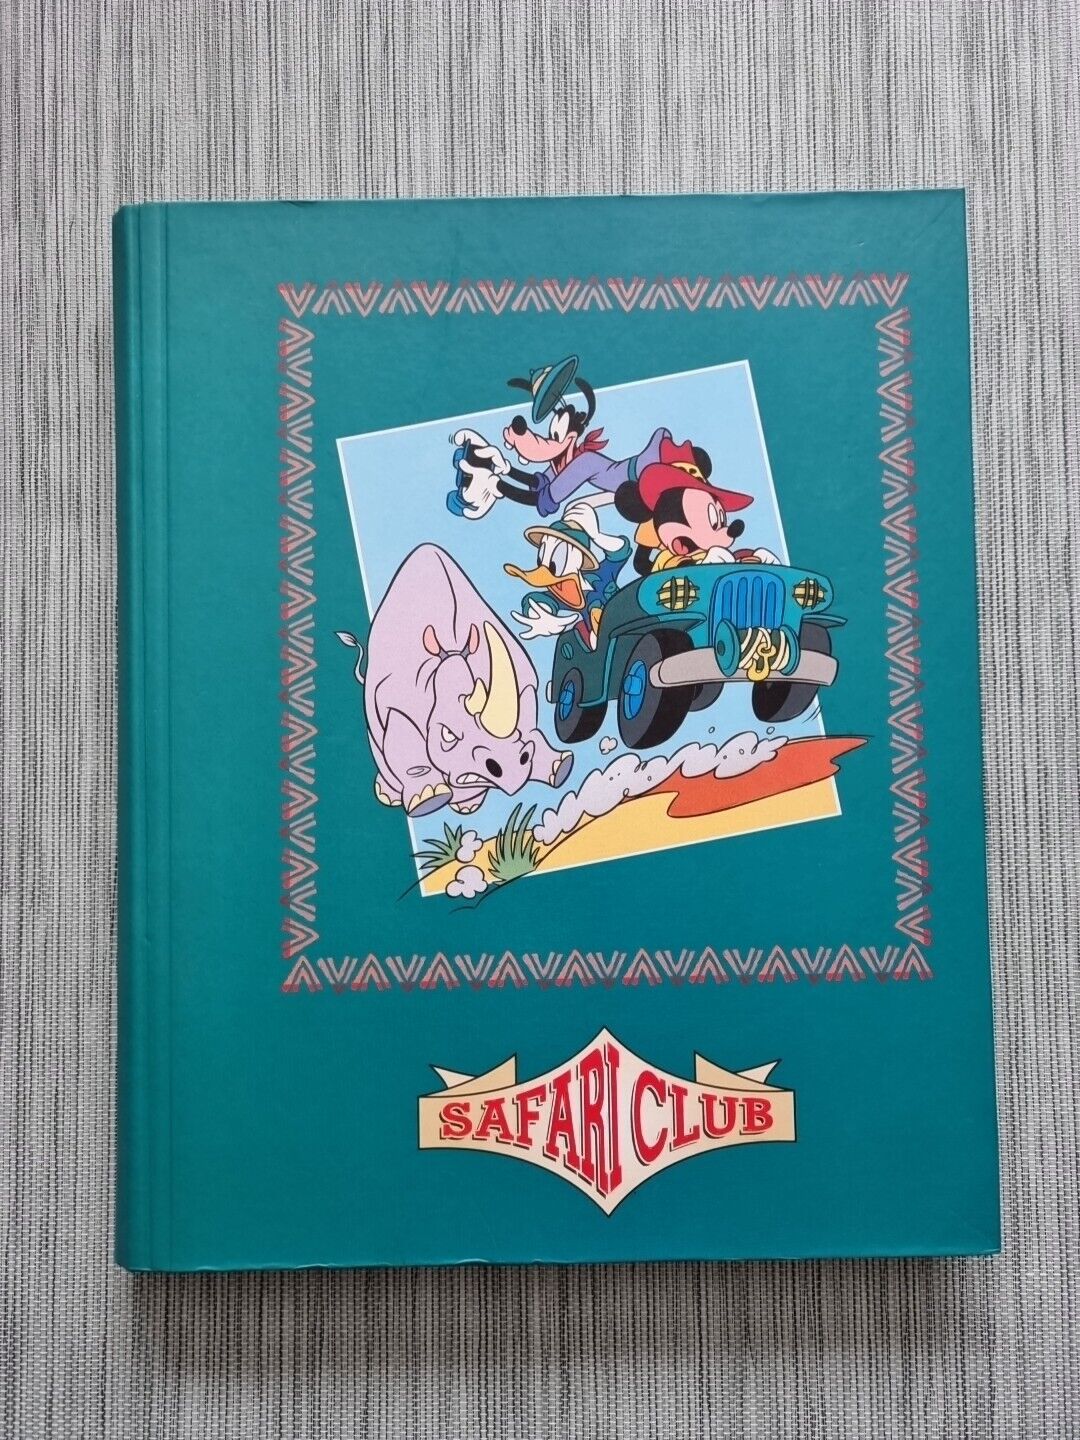 Vintage Disney Safari Club Photo Album Holds 300 Photos Mickey Mouse Goofy Rare